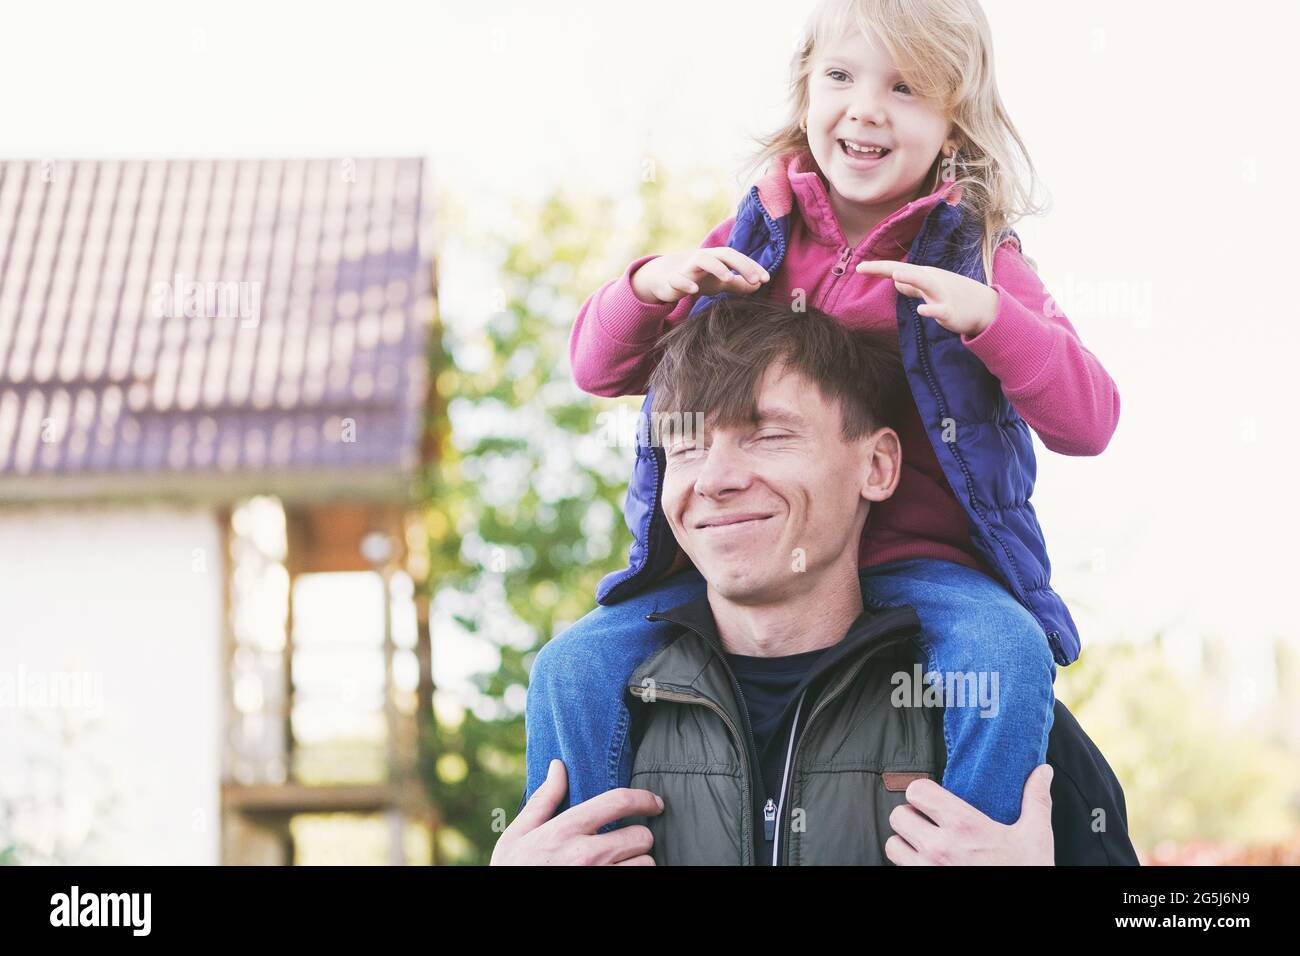 Vater und Tochter haben Spaß zusammen - Single Papa spielt mit Tochter und hält sie auf seinen Schultern - Happy Parent-Child Relationship Concept Stockfoto